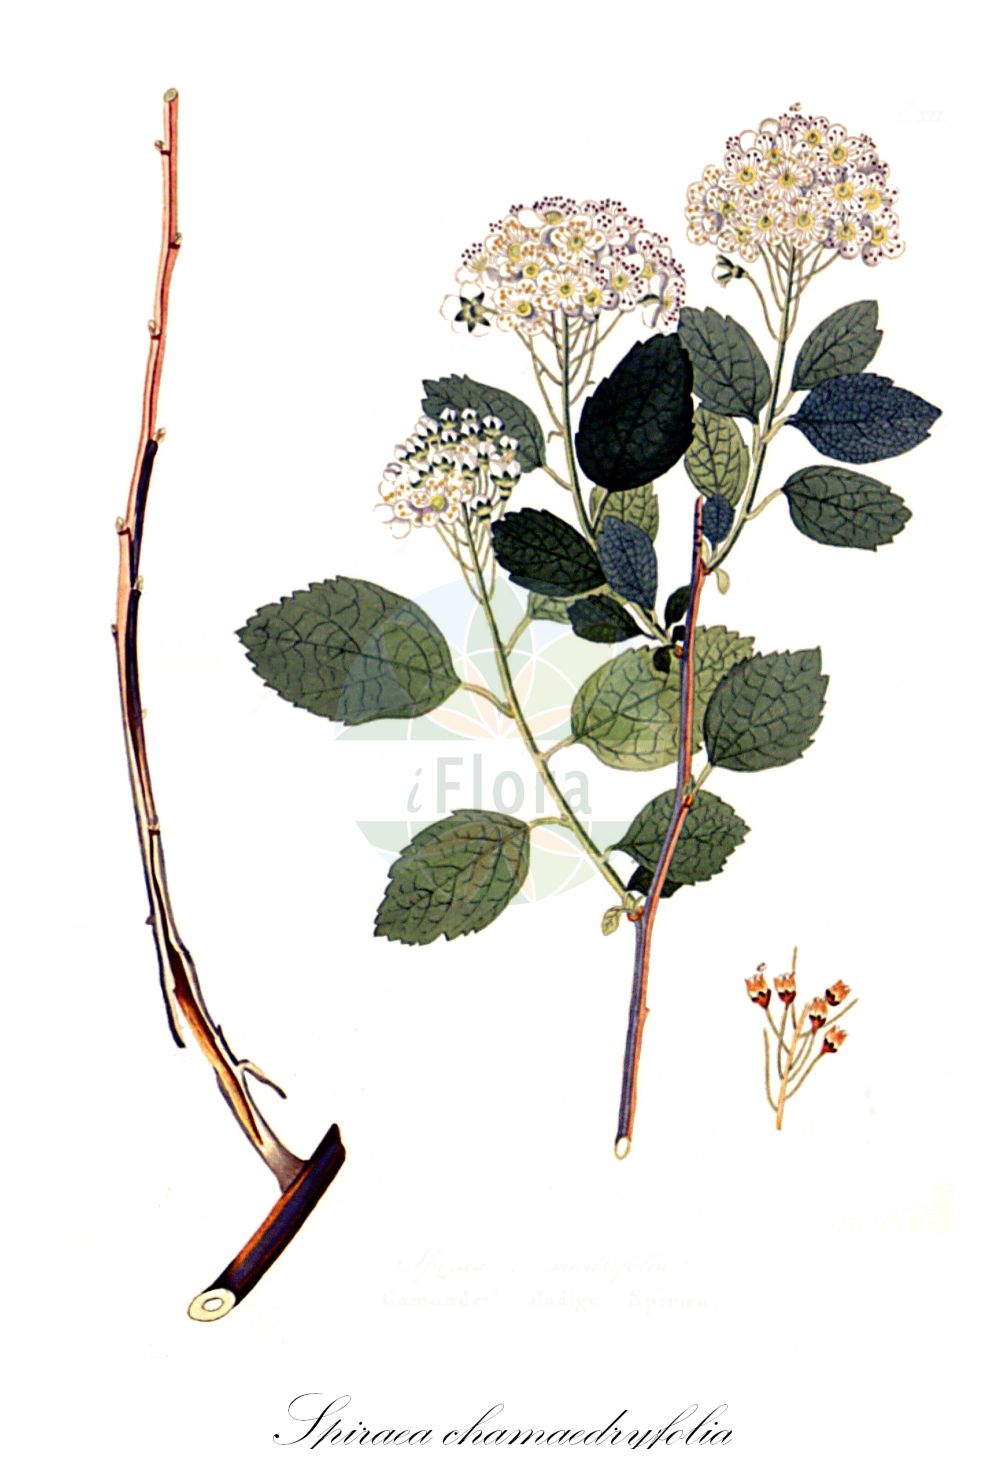 Historische Abbildung von Spiraea chamaedryfolia (Elm-leaved Spiraea). Das Bild zeigt Blatt, Bluete, Frucht und Same. ---- Historical Drawing of Spiraea chamaedryfolia (Elm-leaved Spiraea). The image is showing leaf, flower, fruit and seed.(Spiraea chamaedryfolia,Elm-leaved Spiraea,Spiraea banatica,Spiraea belgica,Spiraea chamaedryfolia,Spiraea oblongata,Spiraea prostrata,Spiraea ulmifolia,Spiraea,Spierstrauch,Brideworts,Rosaceae,Rosengewächse,Rose family,Blatt,Bluete,Frucht,Same,leaf,flower,fruit,seed,Krauss (1802f))